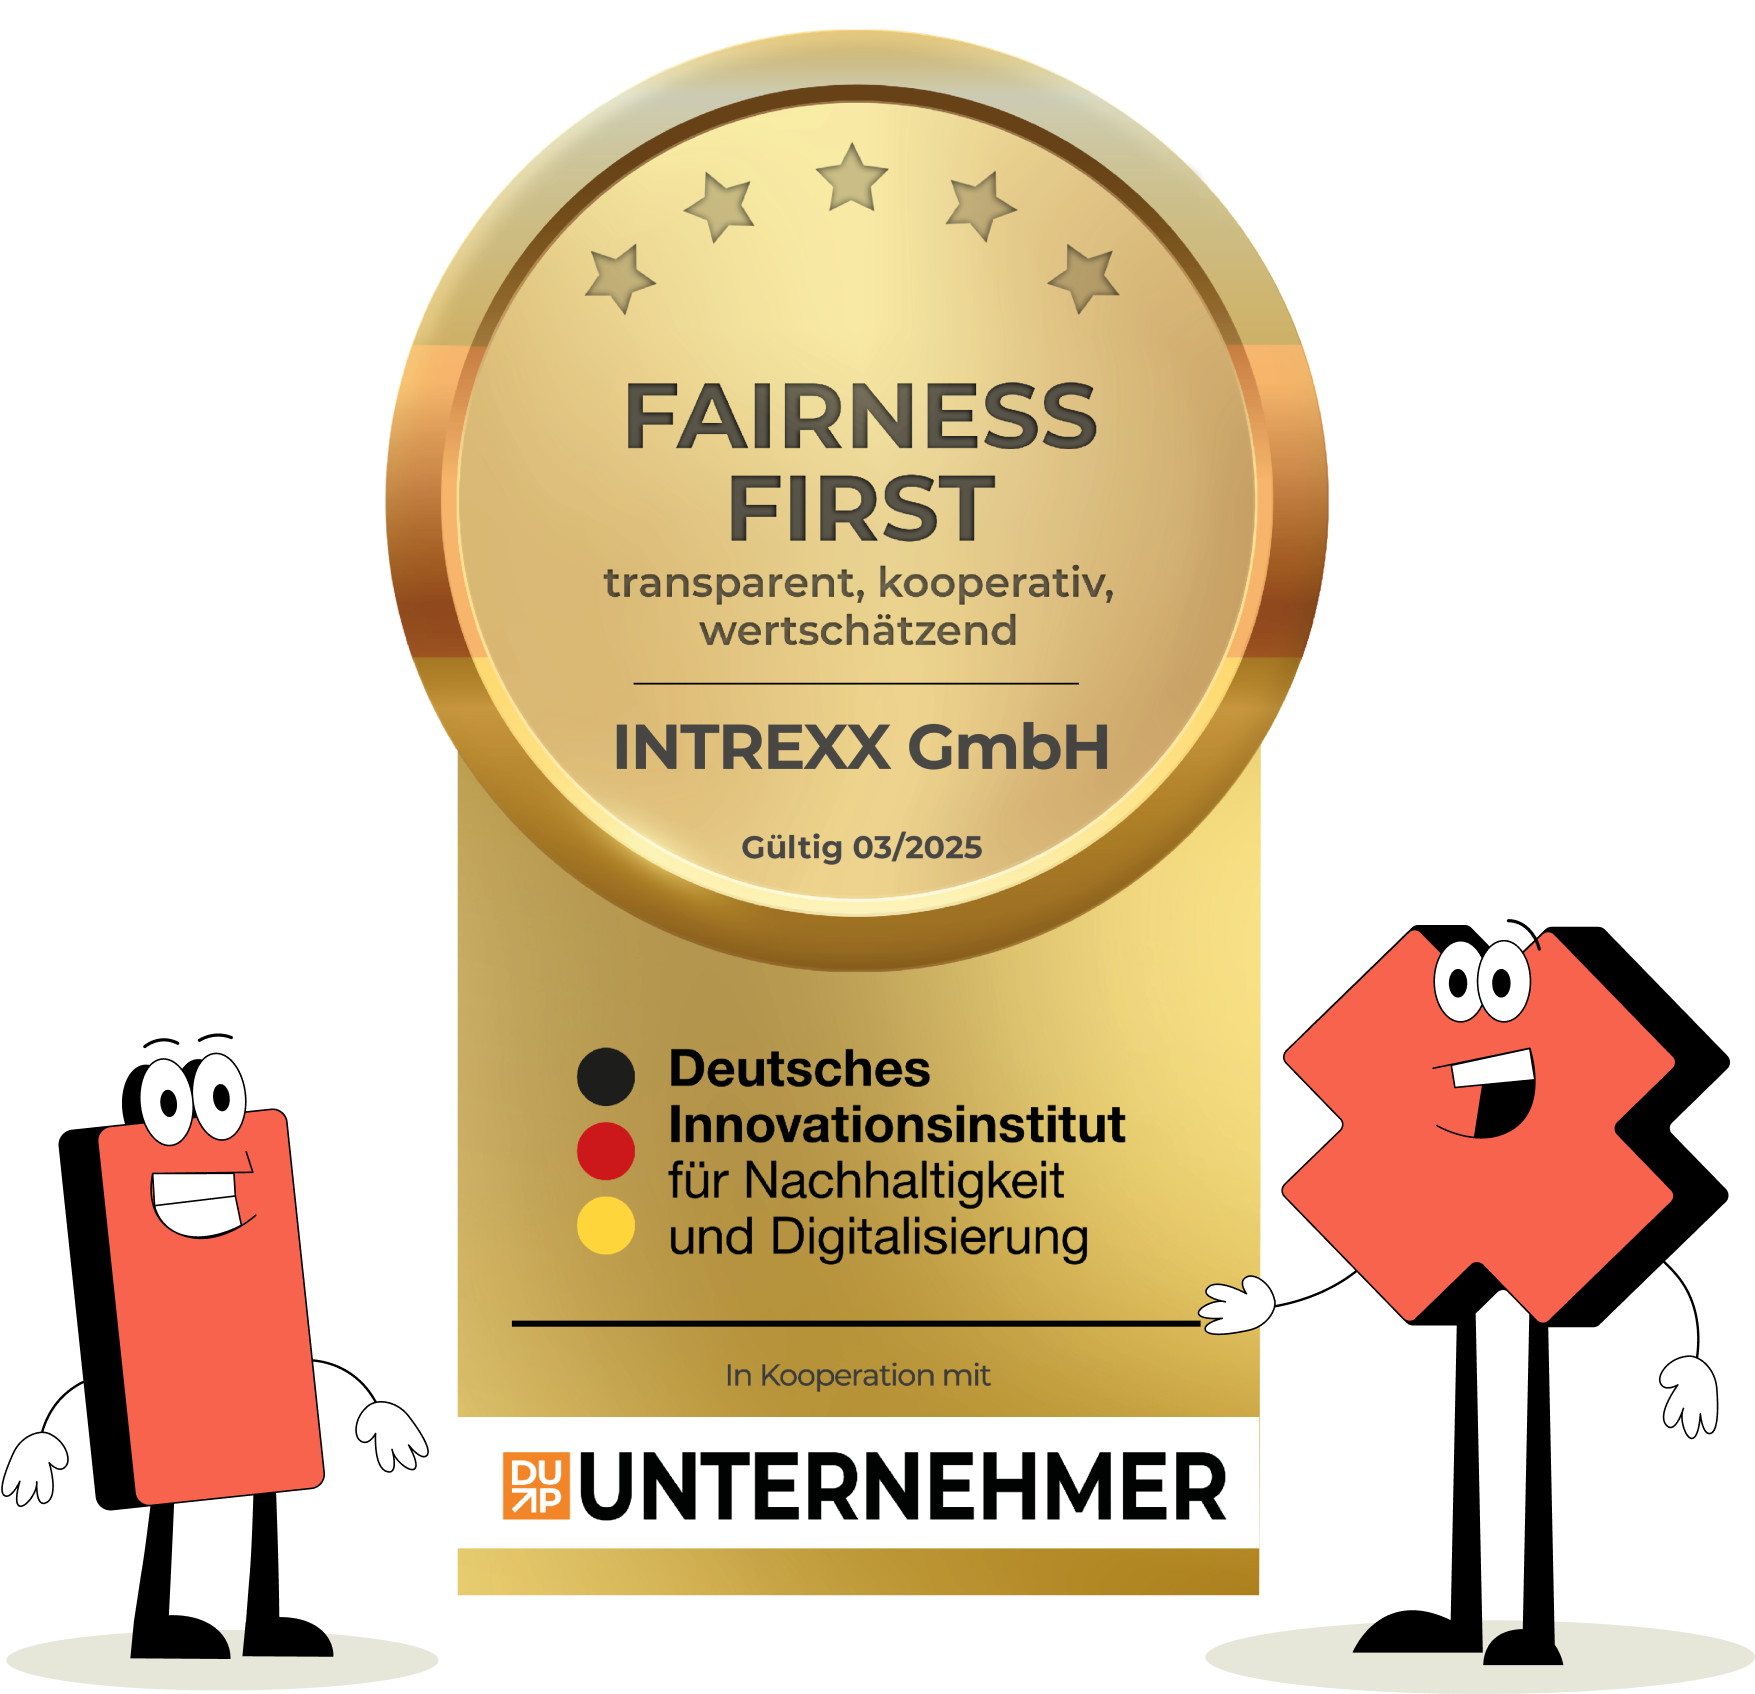 Intrexx gewinnt als Arbeitgeber den Fairness First Award.